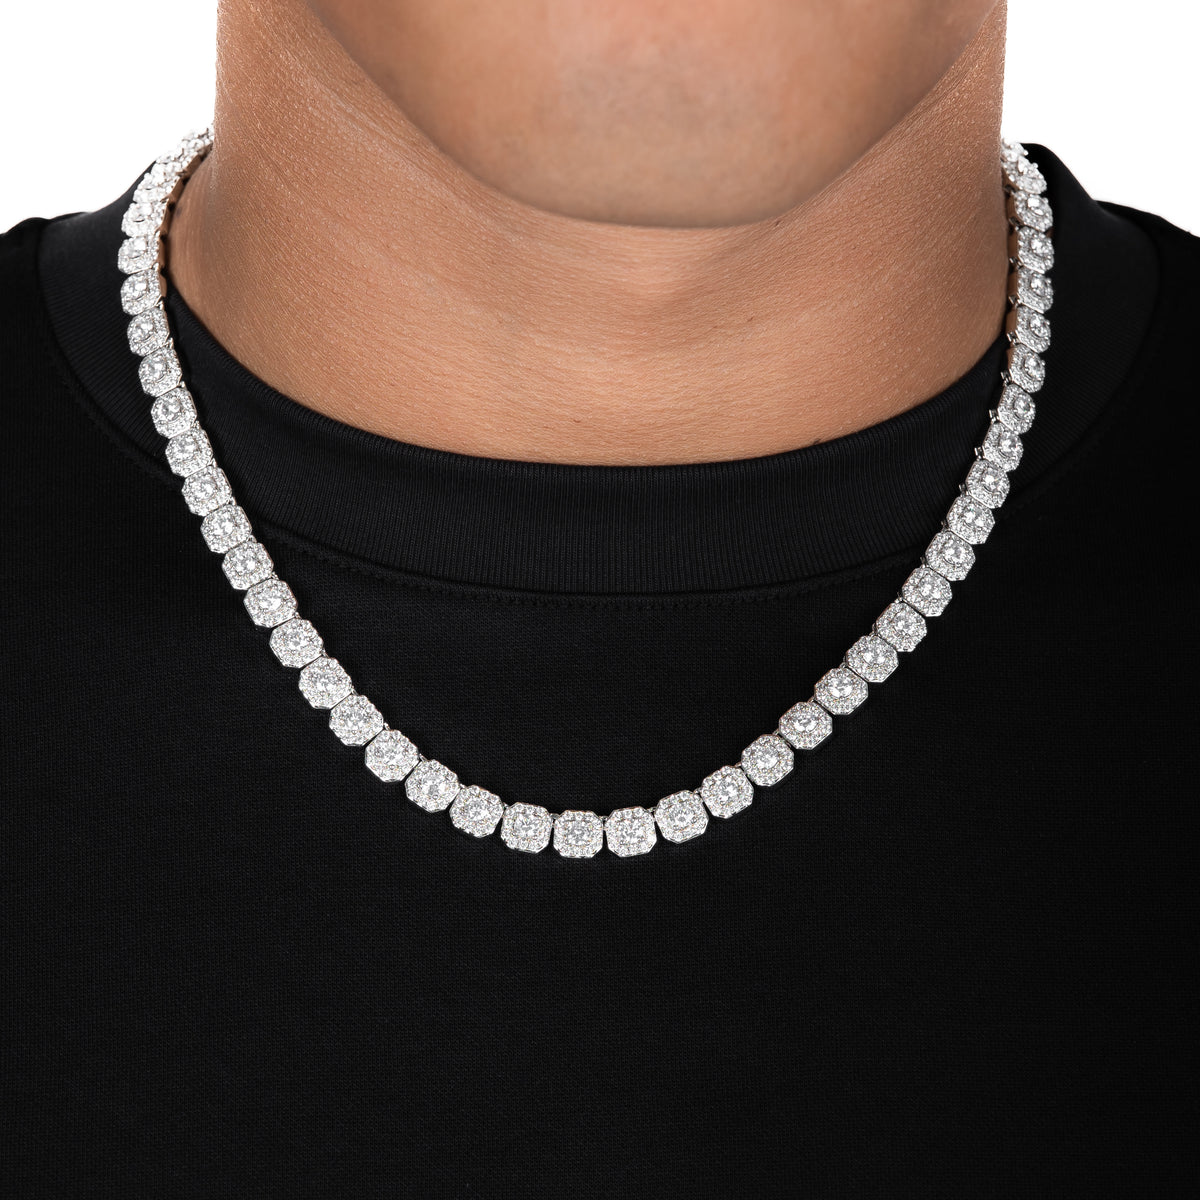 4mm Diamond Beads Chain White Gold